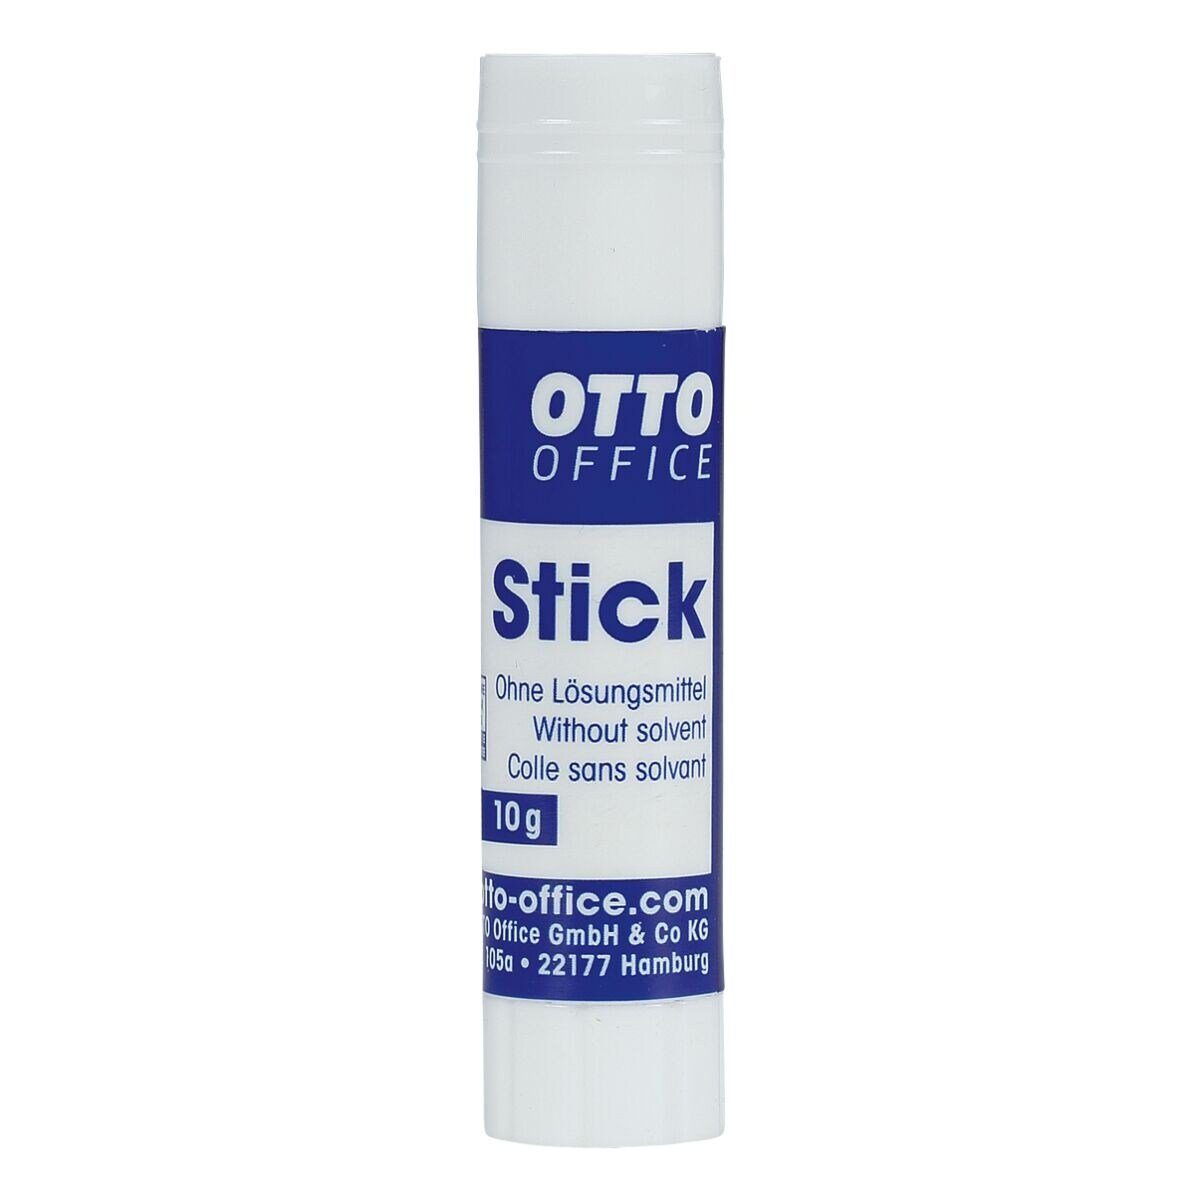 Otto Office  Office Klebestift Stick, 10 g, leicht zu verarbeiten